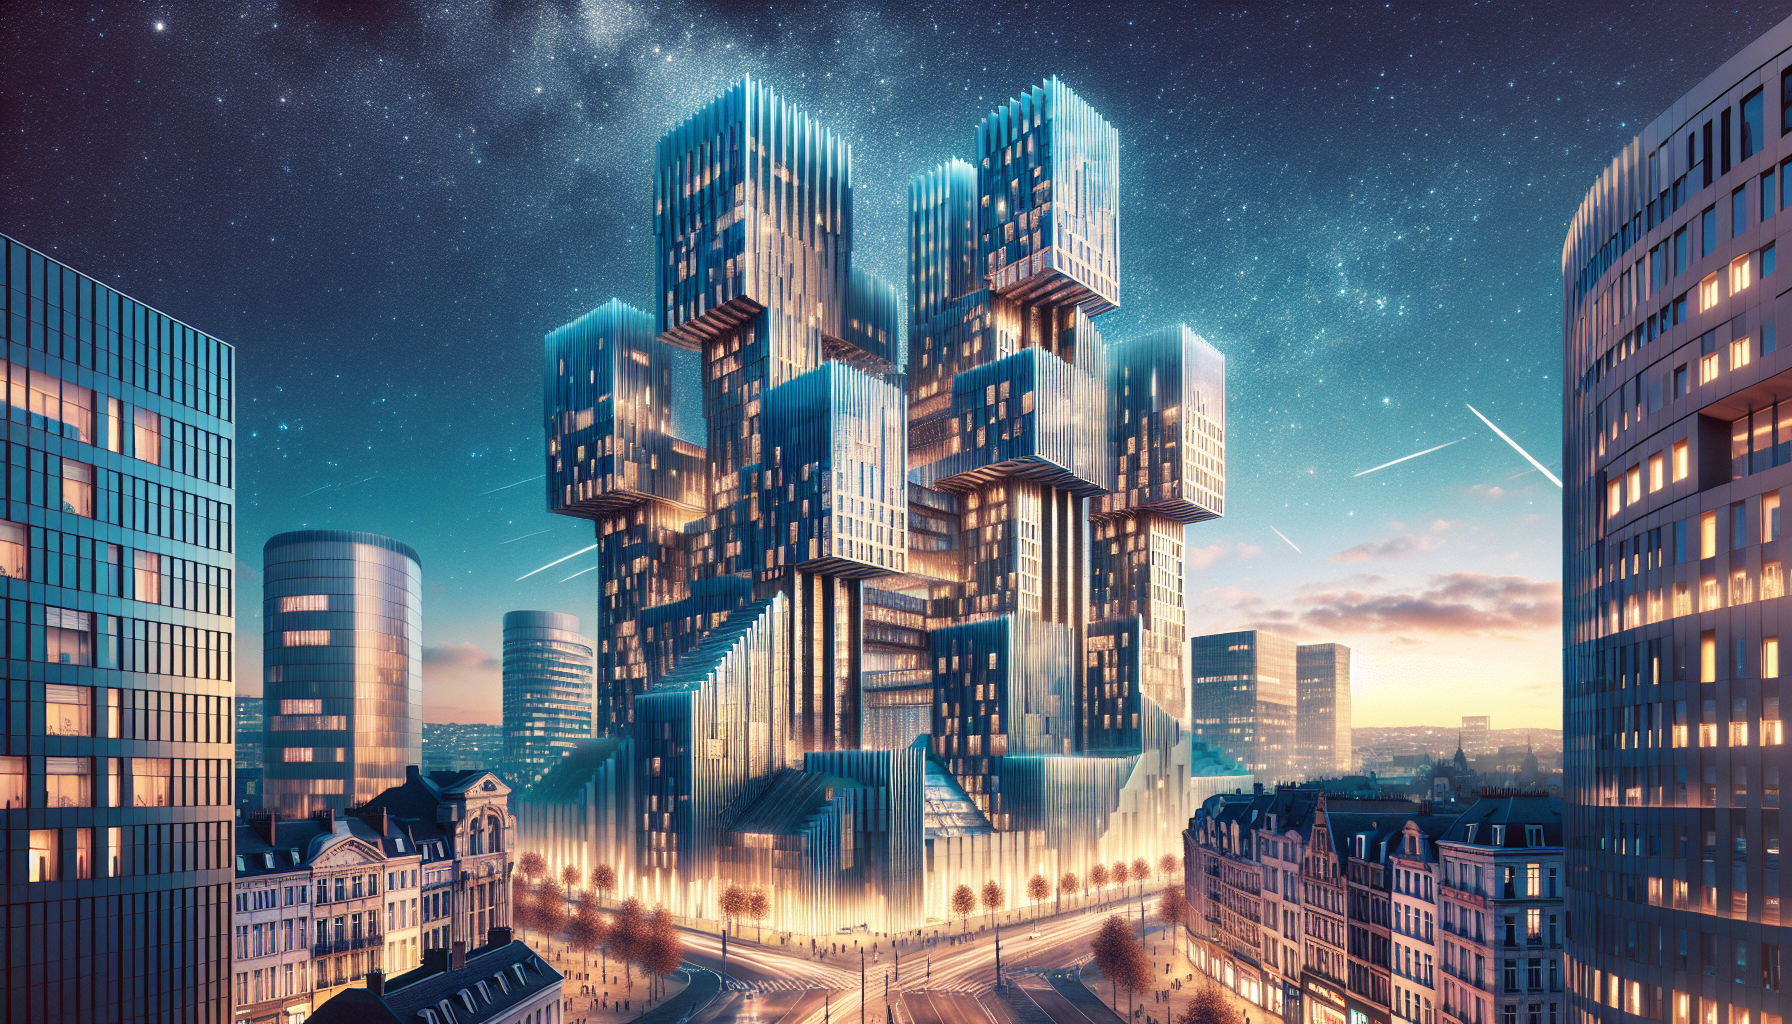 découvrez les projets phares des nouvelles constructions à bruxelles et soyez au courant des dernières tendances en matière d'urbanisme et d'architecture dans la capitale belge.